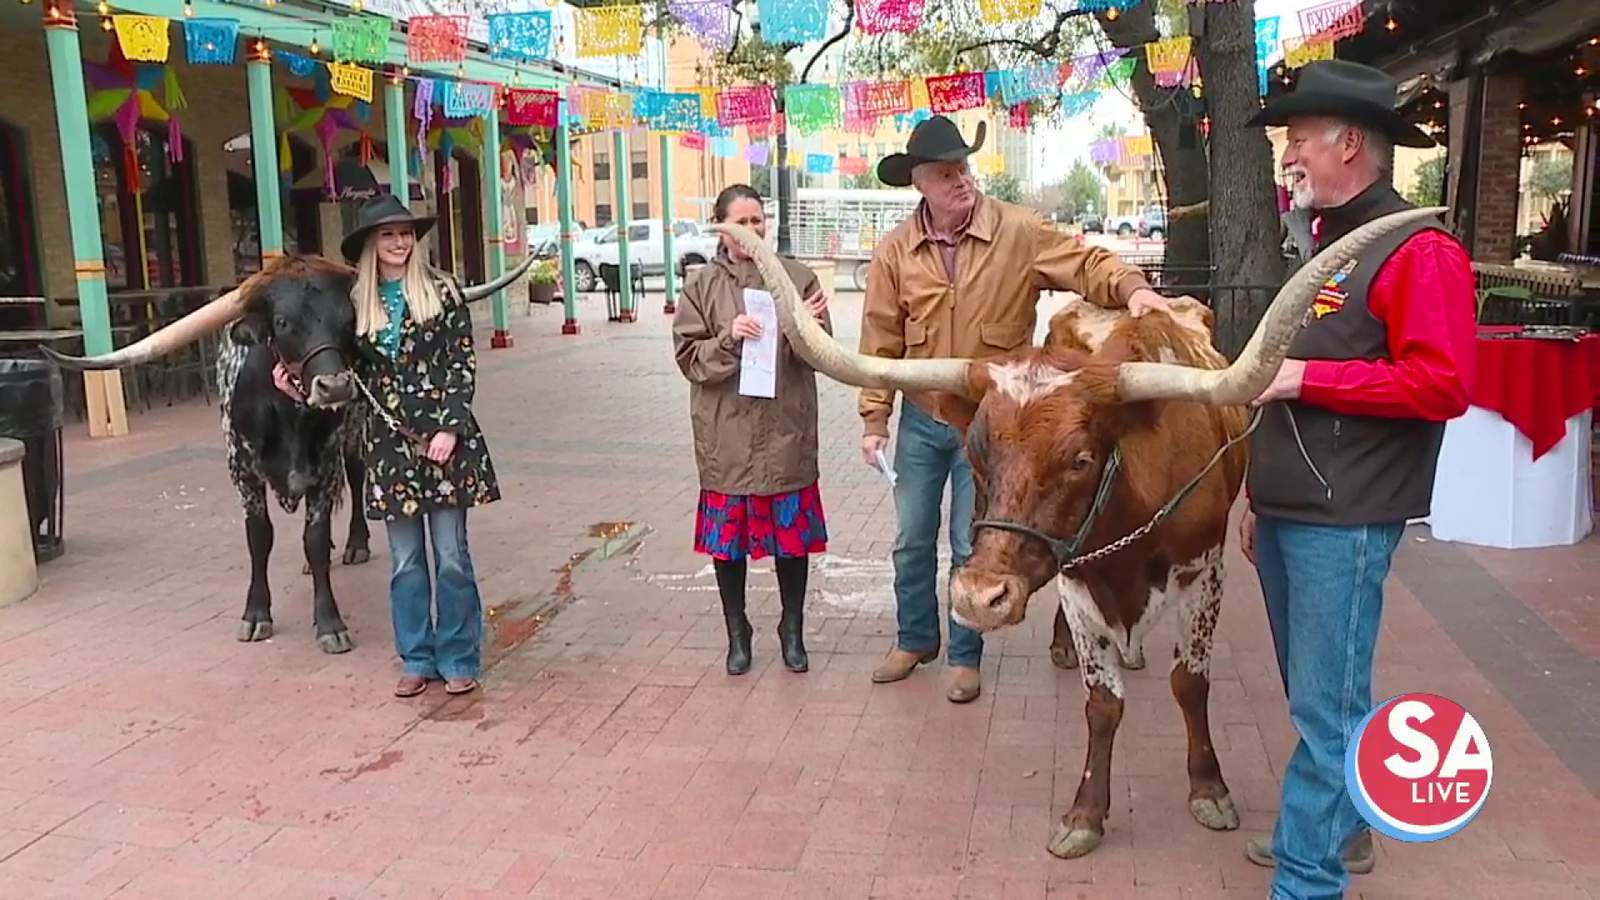 Longhorns take over Market Square